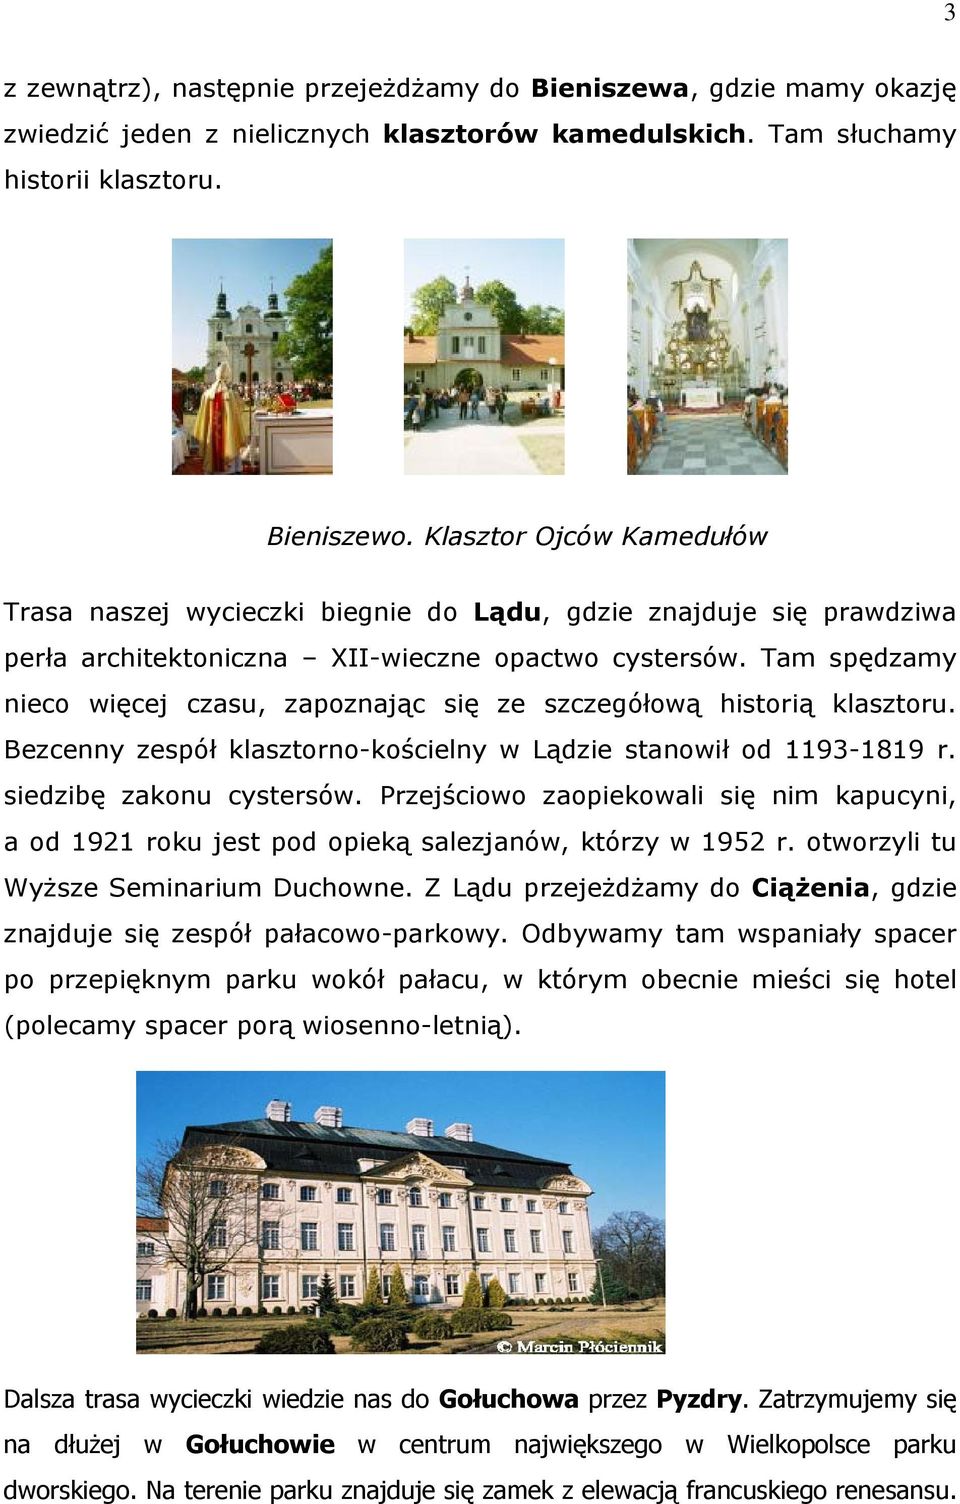 Tam spędzamy nieco więcej czasu, zapoznając się ze szczegółową historią klasztoru. Bezcenny zespół klasztorno-kościelny w Lądzie stanowił od 1193-1819 r. siedzibę zakonu cystersów.